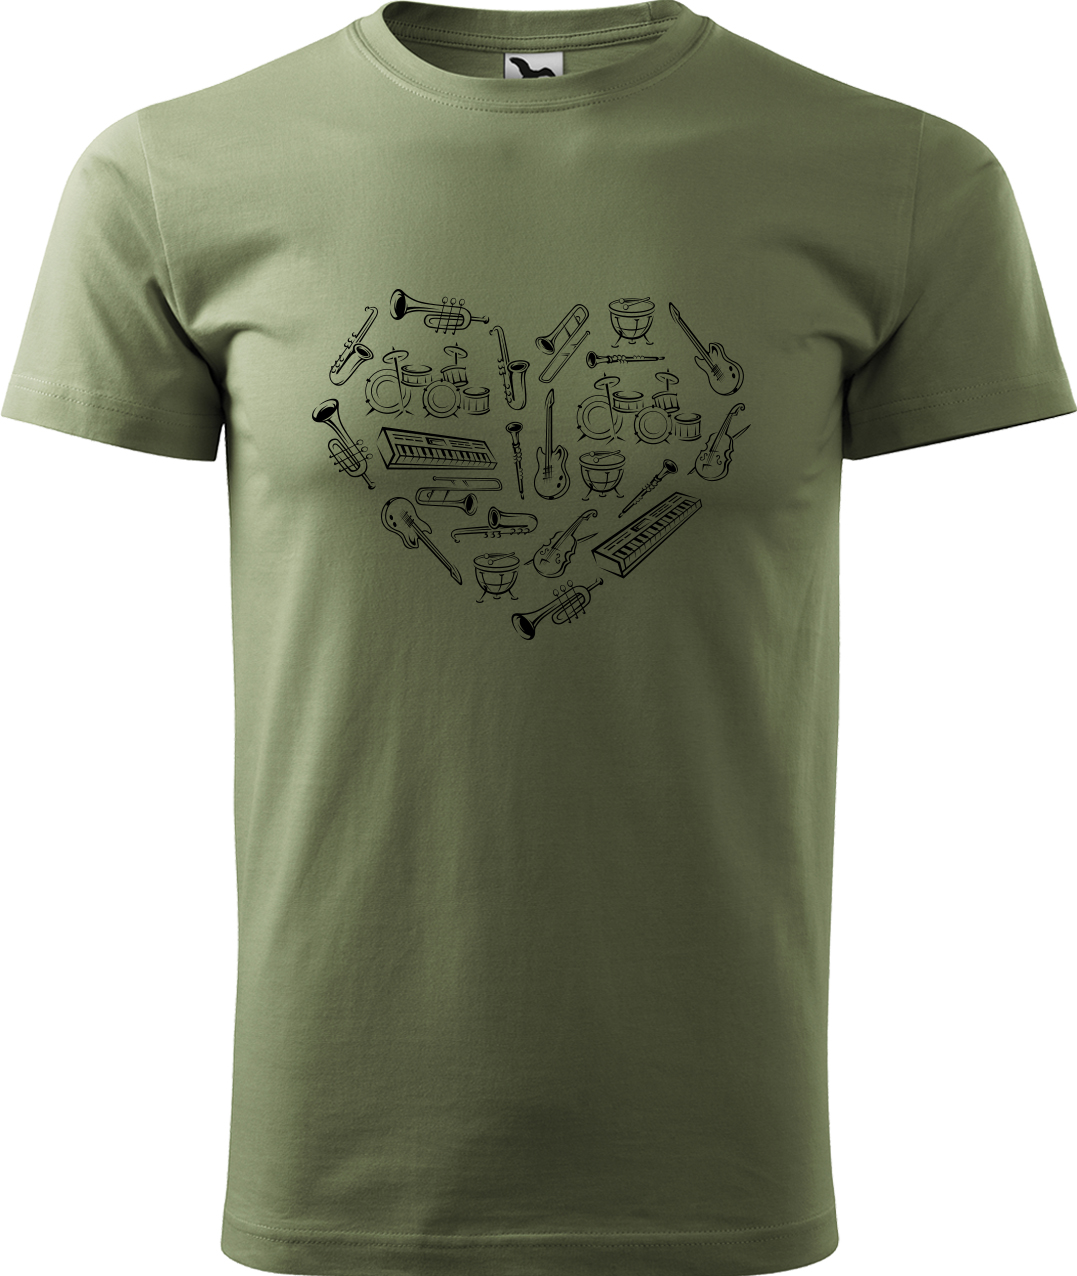 Pánské tričko s kytarou - Srdce z nástrojů Velikost: 3XL, Barva: Světlá khaki (28), Střih: pánský